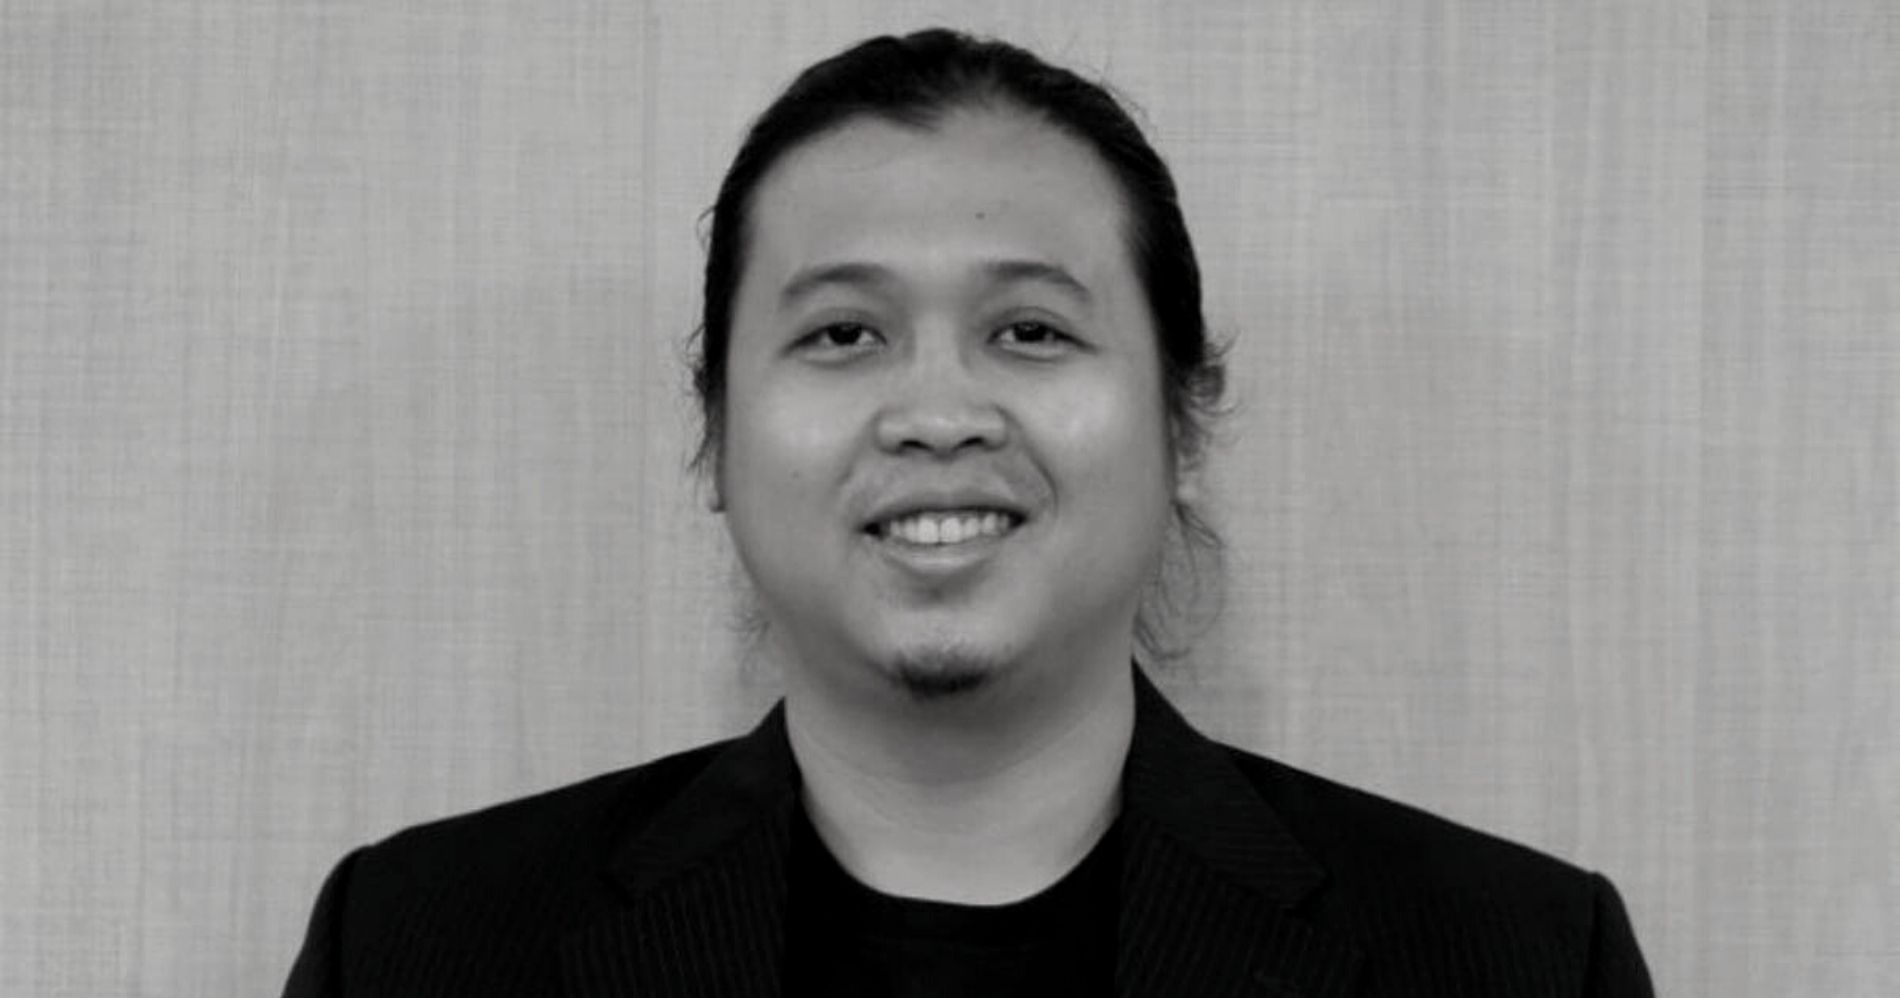 Muhammad Farid Andika Mundur sebagai CEO Restock.id - Pinterest